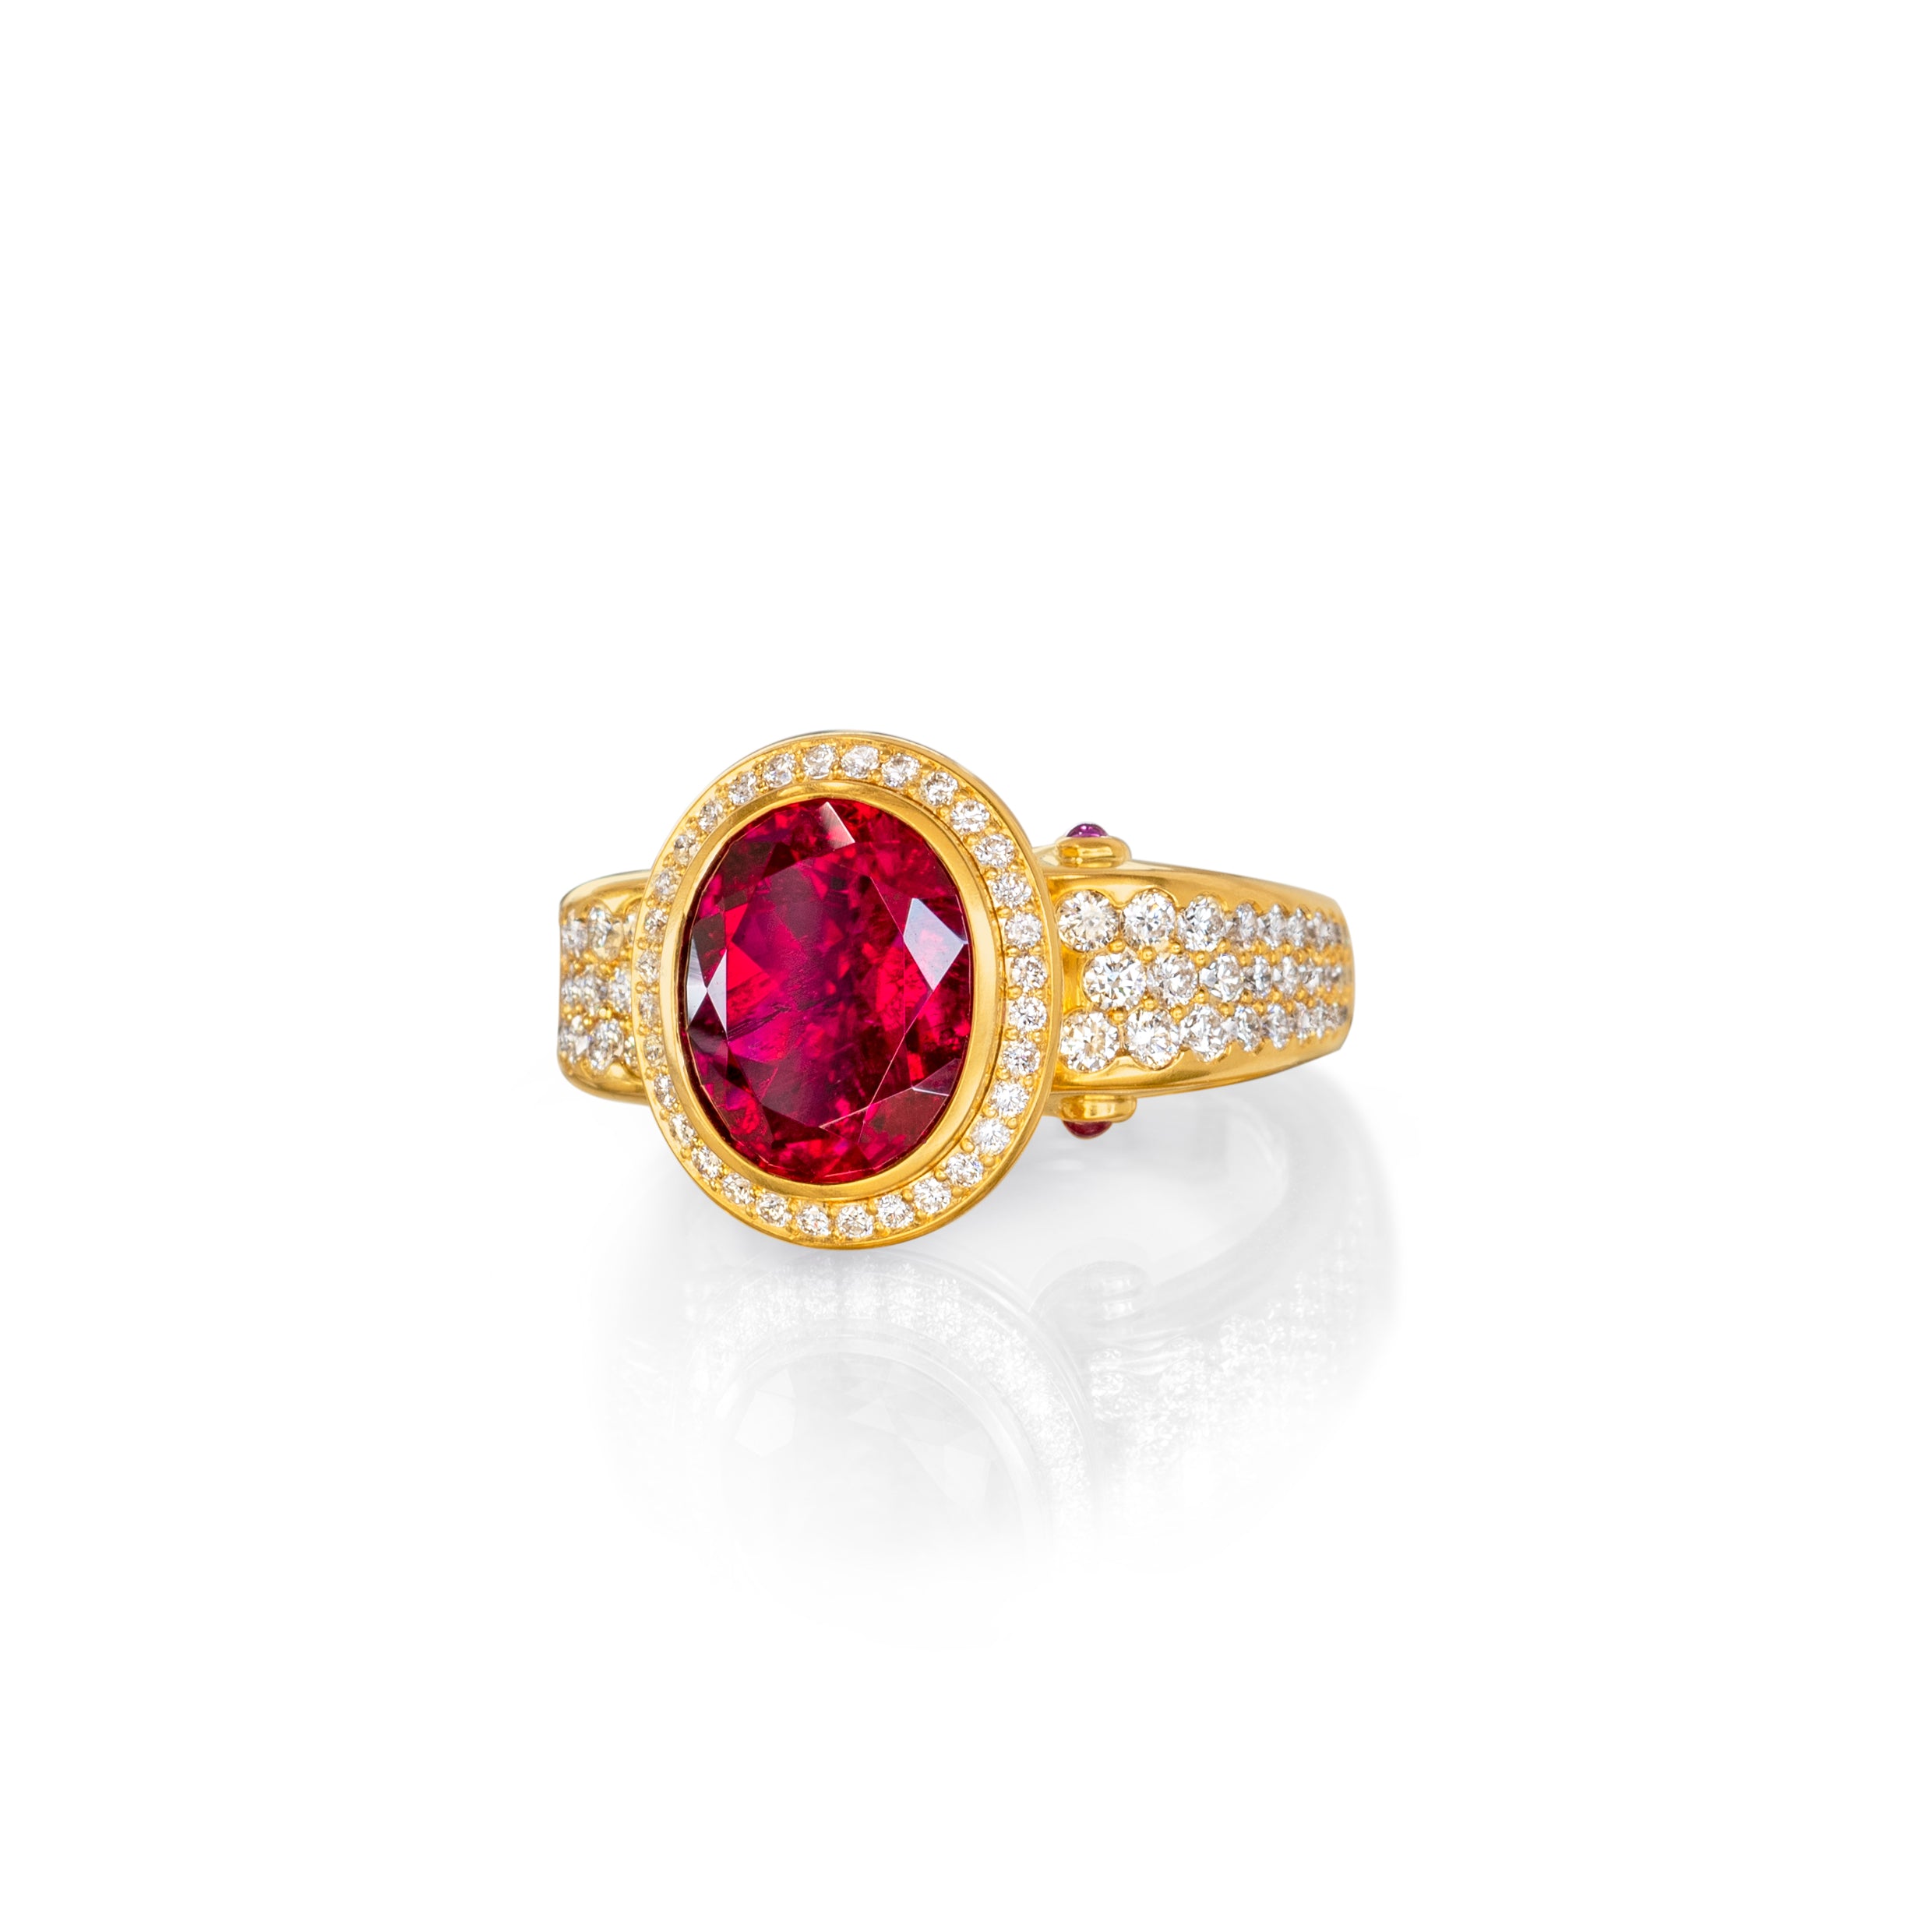 Ring "Volute" 750 Gelbgold mit einem Rubellit, pink Saphiren und Brillanten